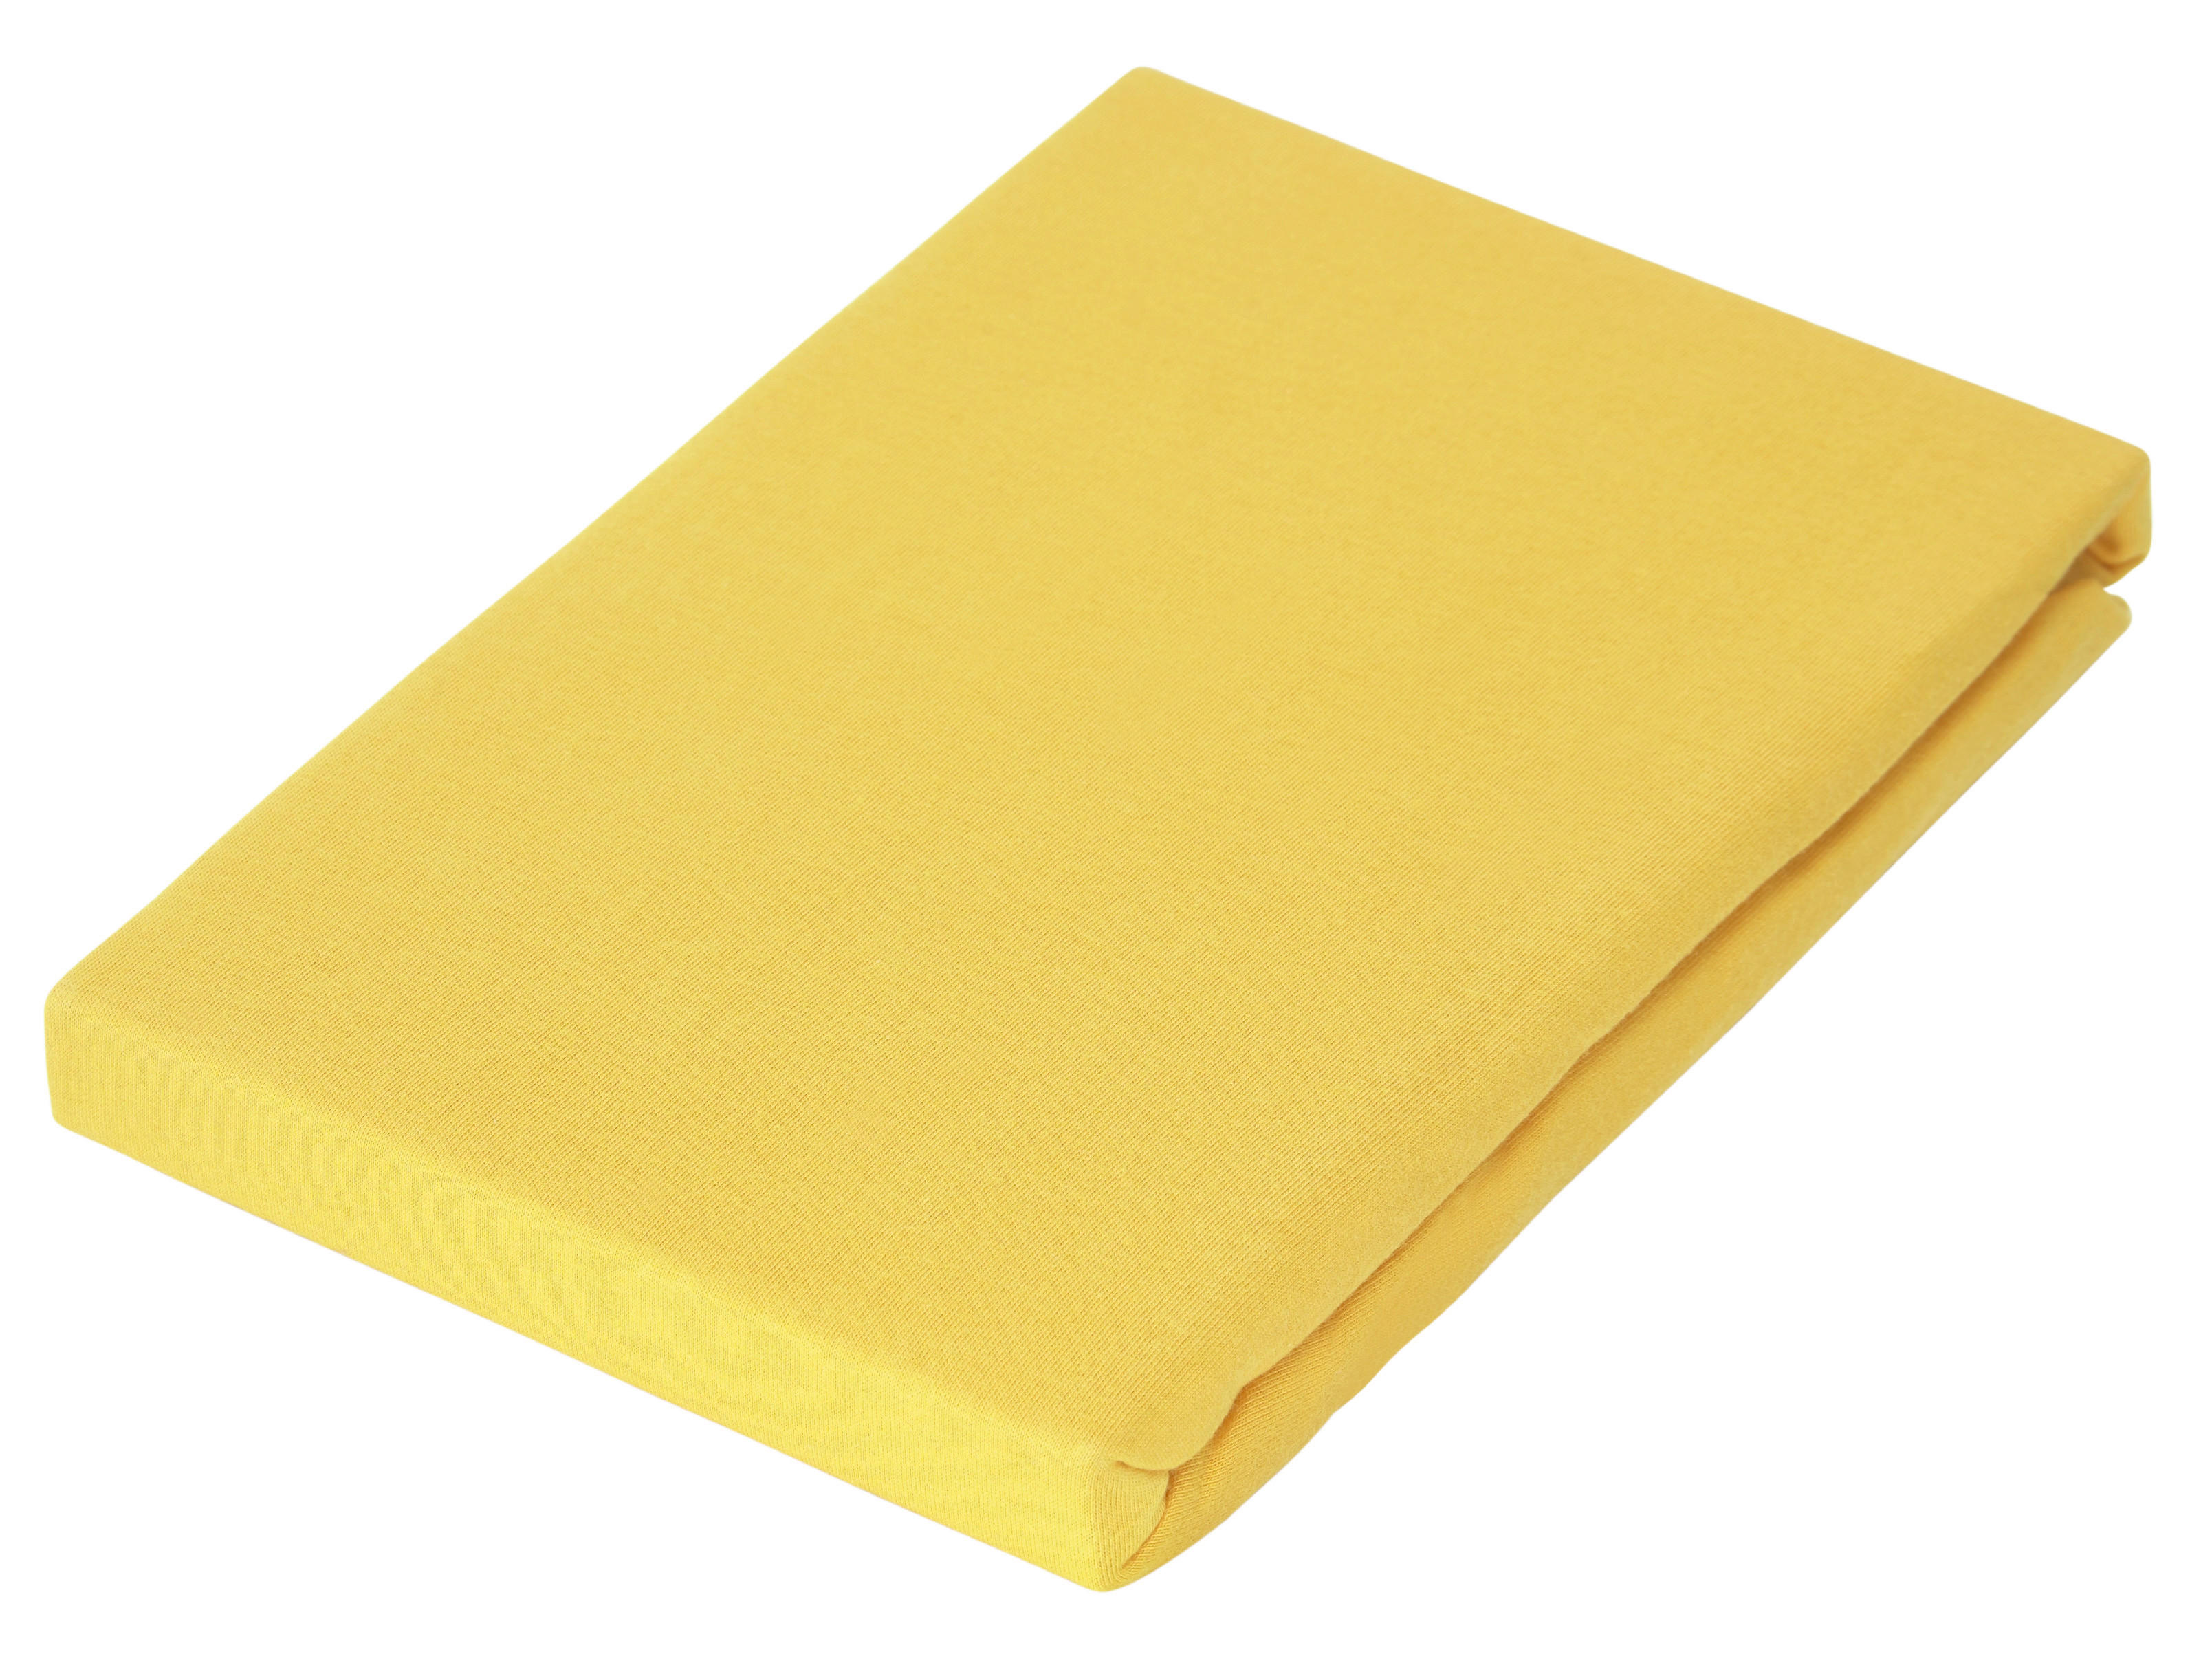 NAPÍNACIE PRESTIERADLO, džersej, žltá, 100/200 cm - žltá, Basics, textil (100/200cm) - Novel